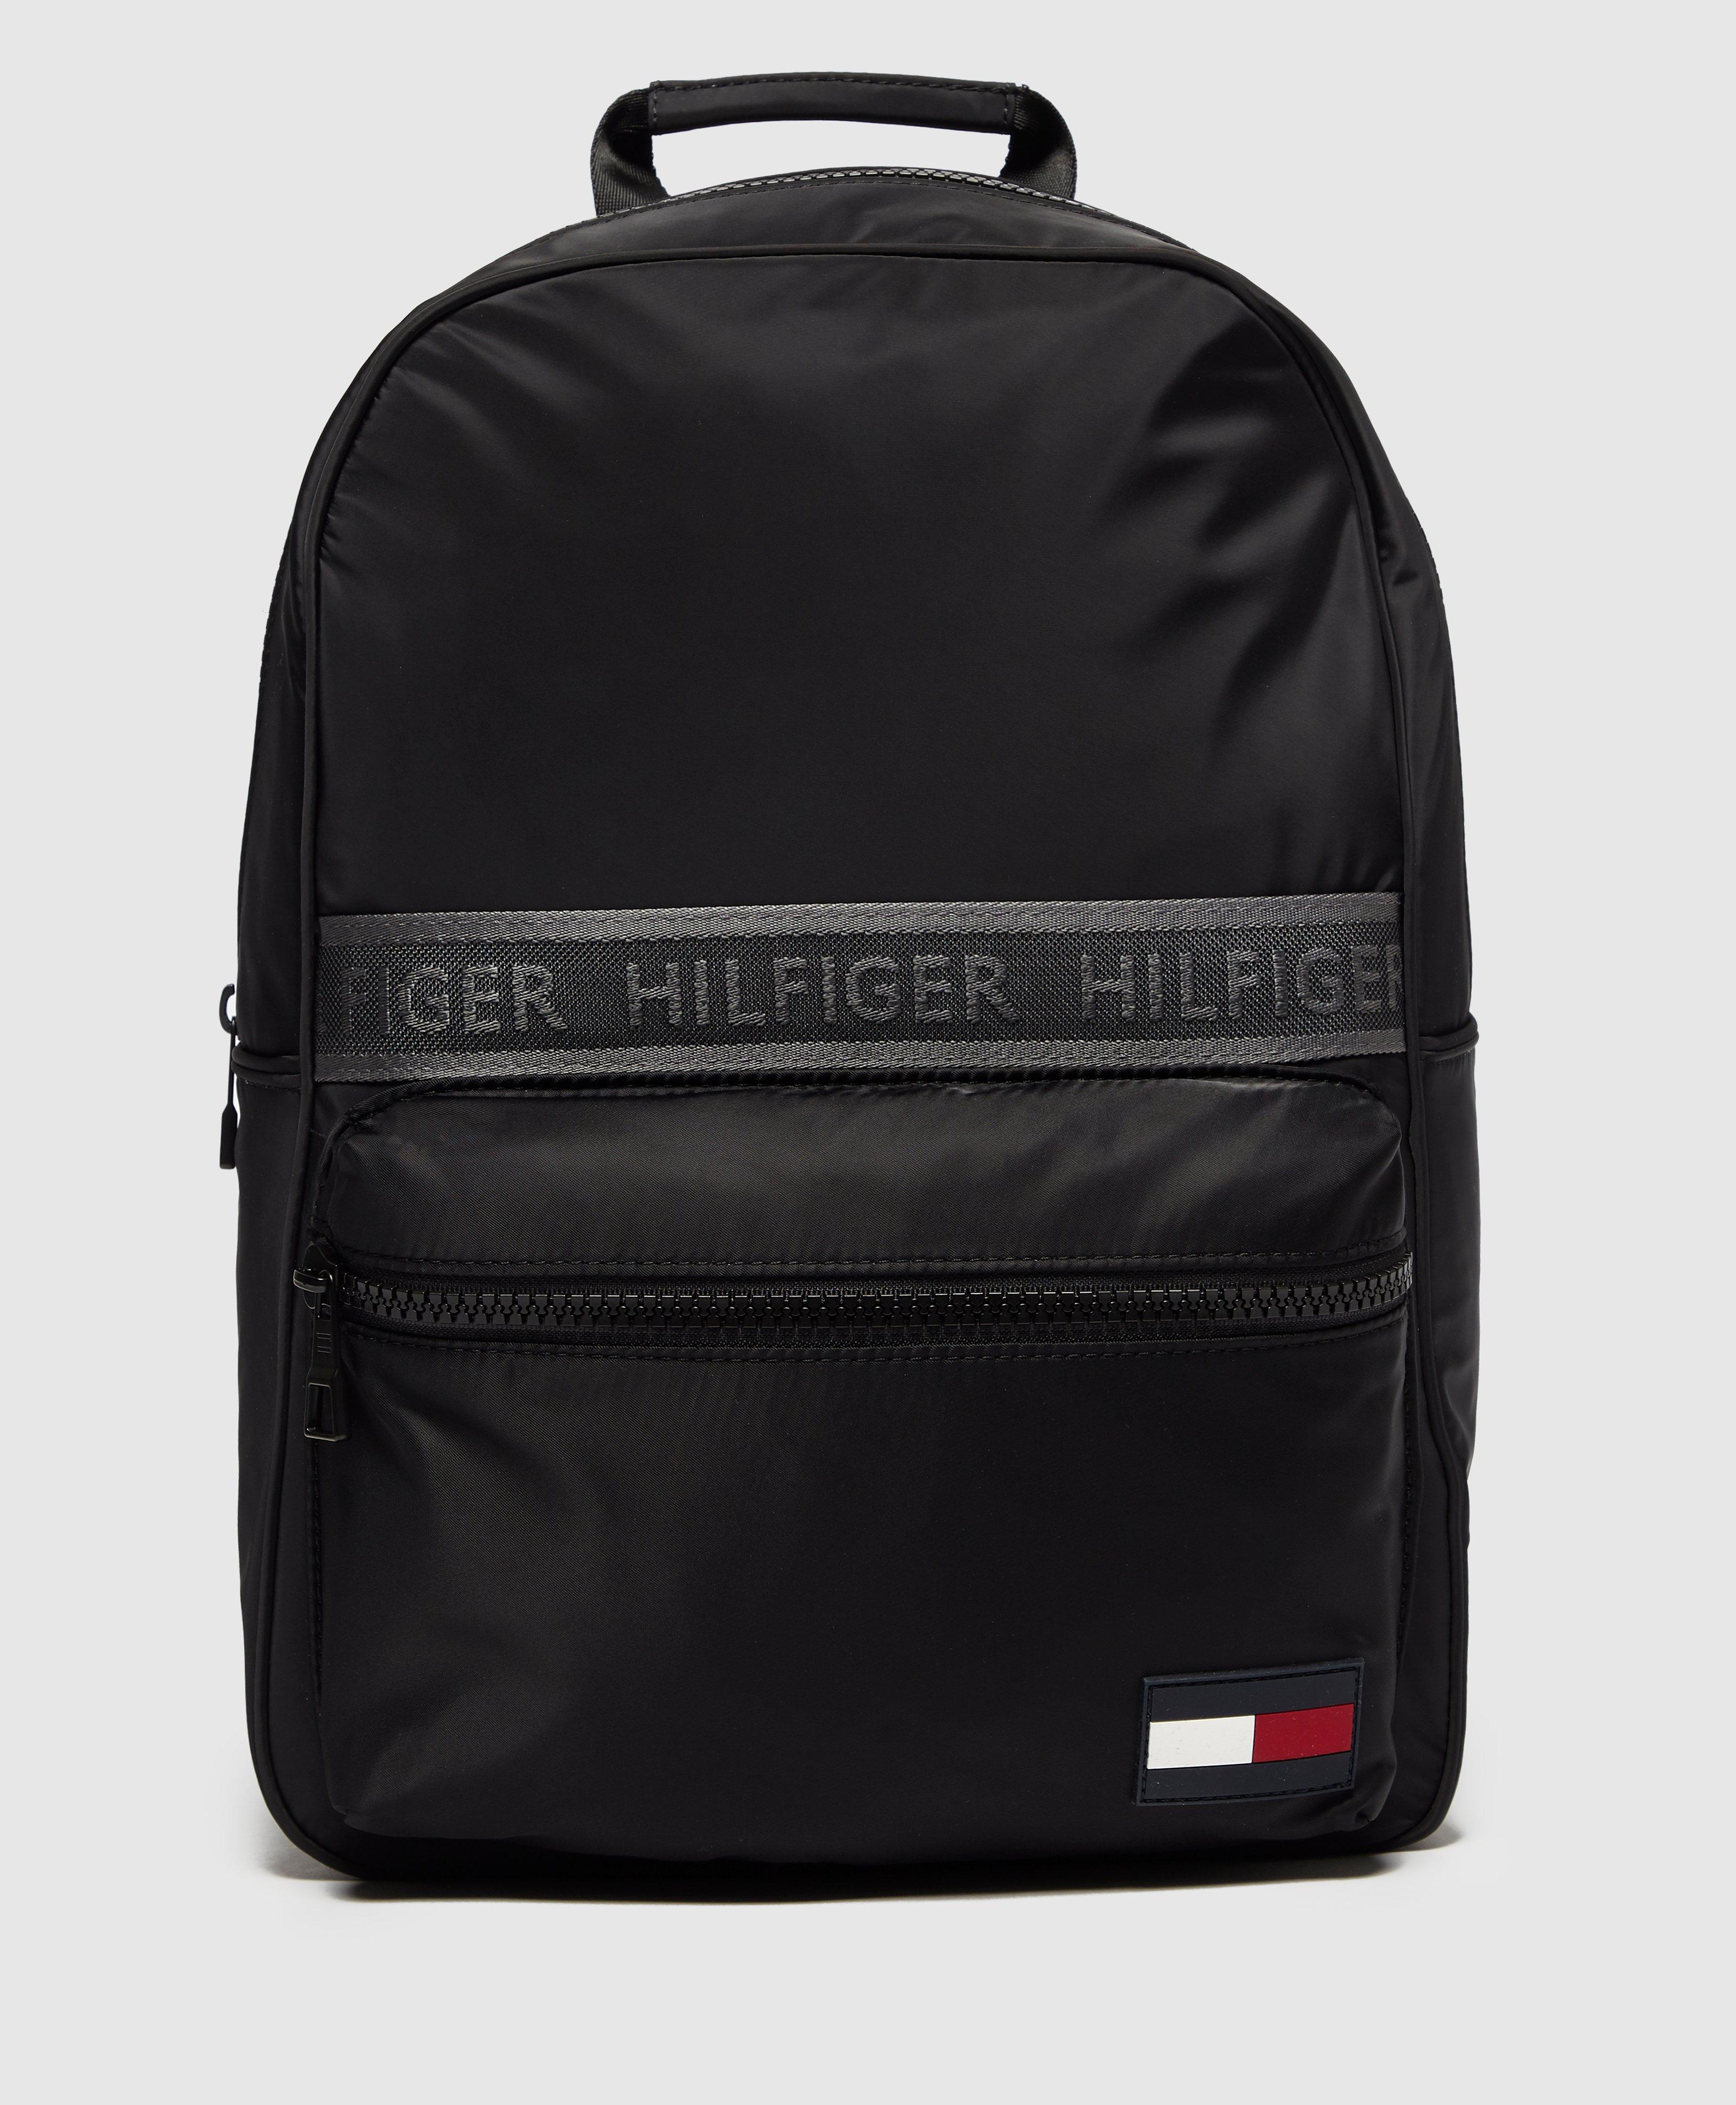 Tommy Hilfiger Tape Flag Backpack in Black for Men - Lyst